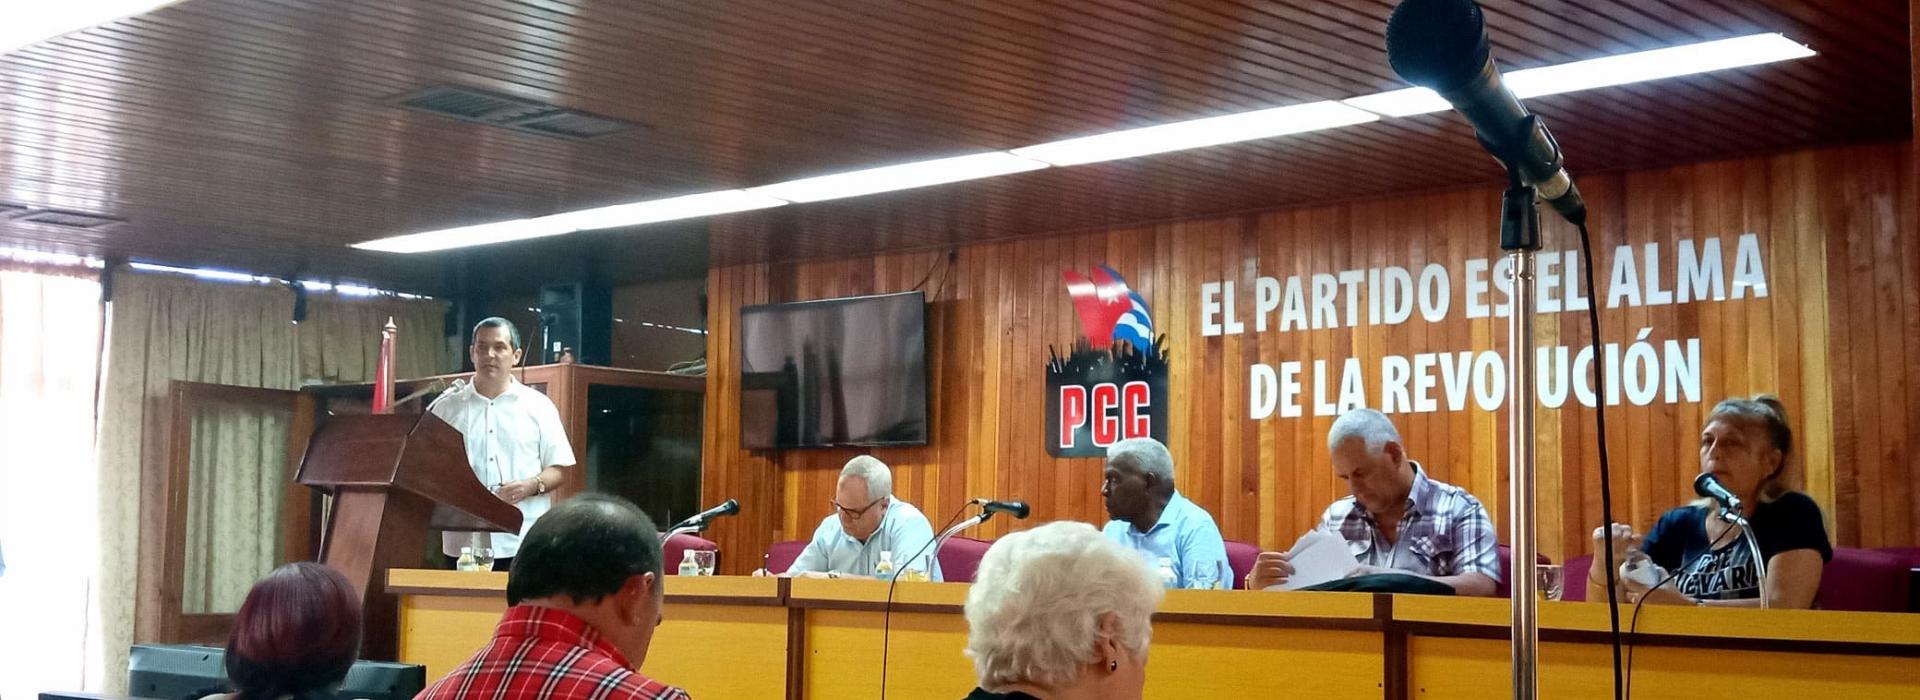 Encabeza Esteban Lazo tercera jornada de la visita parlamentaria a Holguín